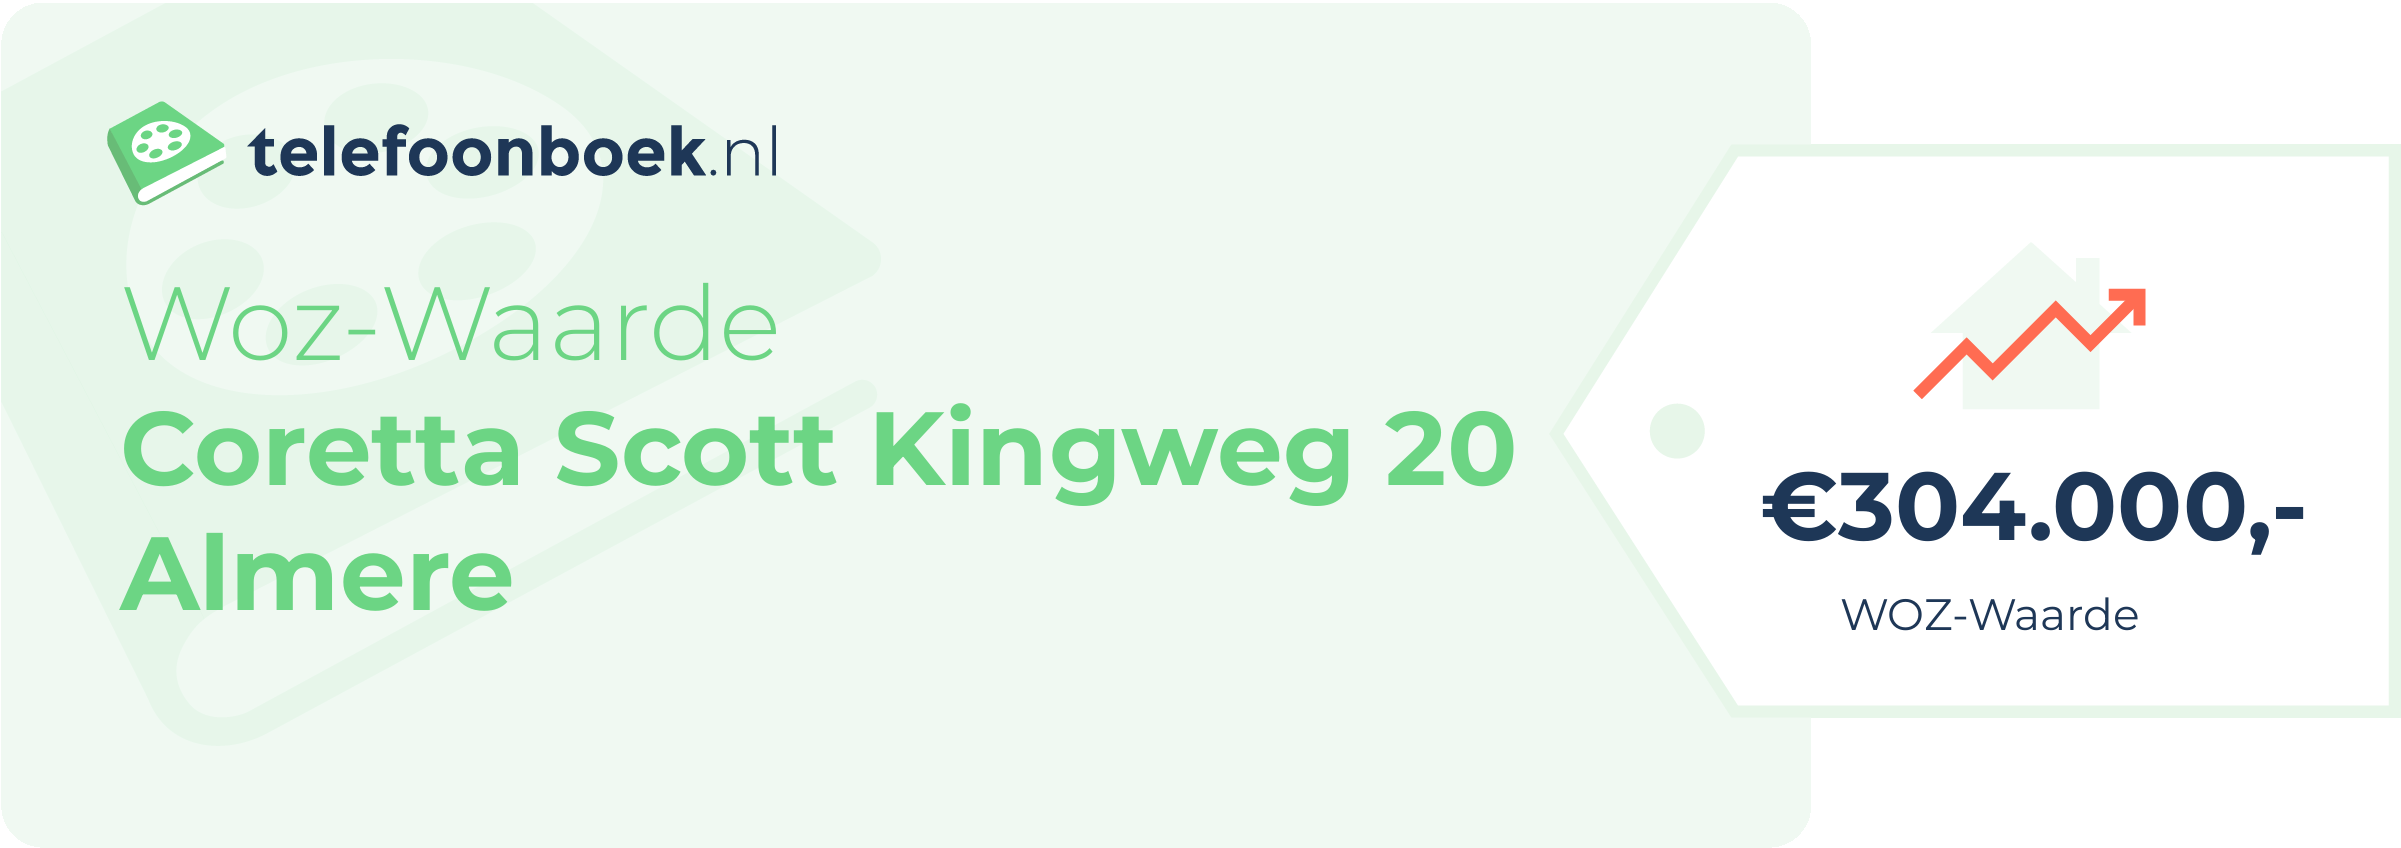 WOZ-waarde Coretta Scott Kingweg 20 Almere